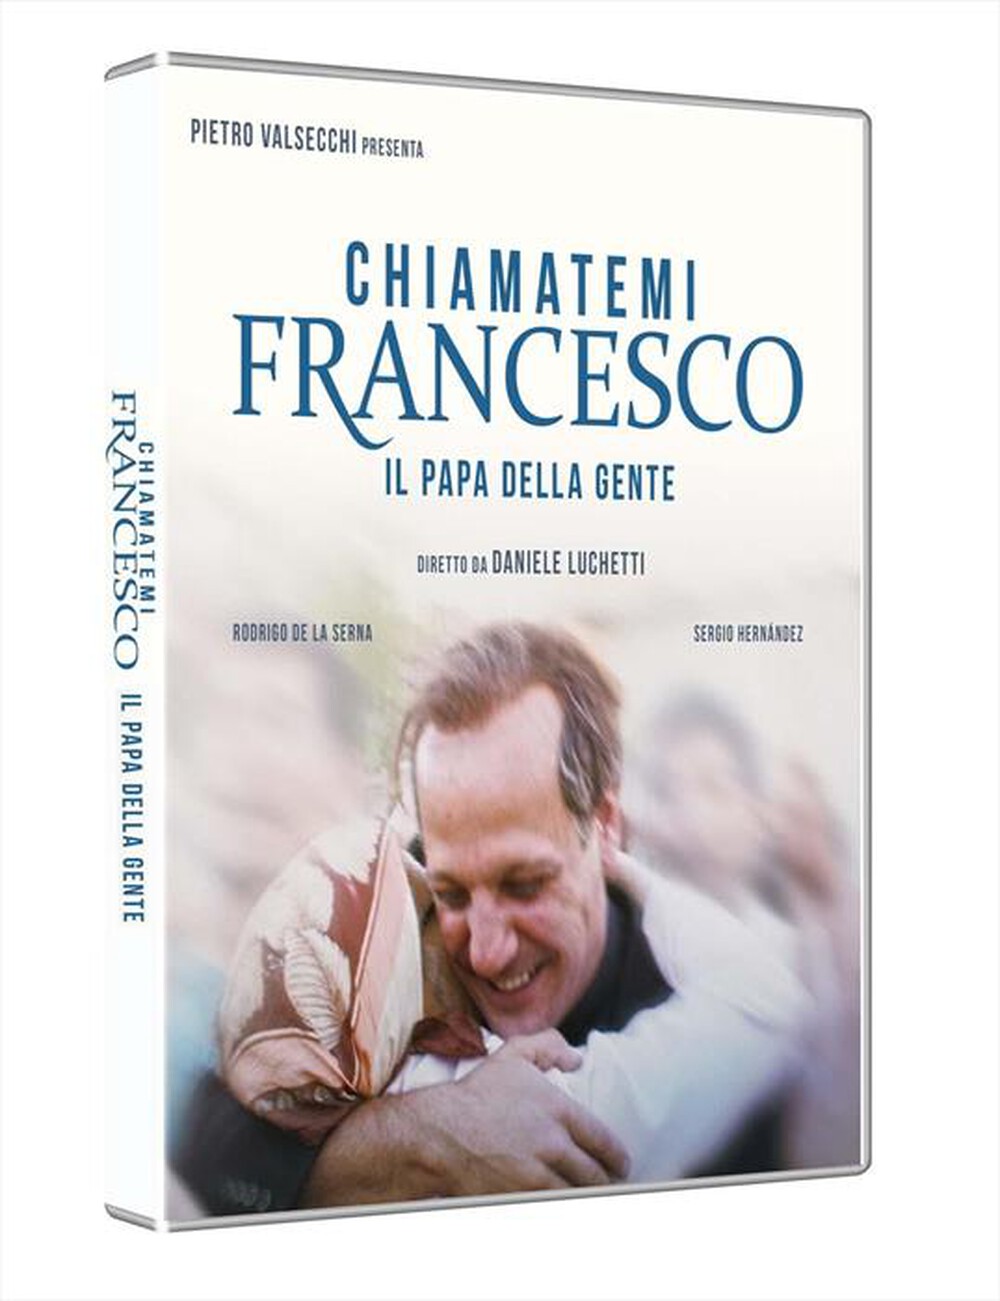 "UNIVERSAL PICTURES - Chiamatemi Francesco, Il Papa Della Gente"